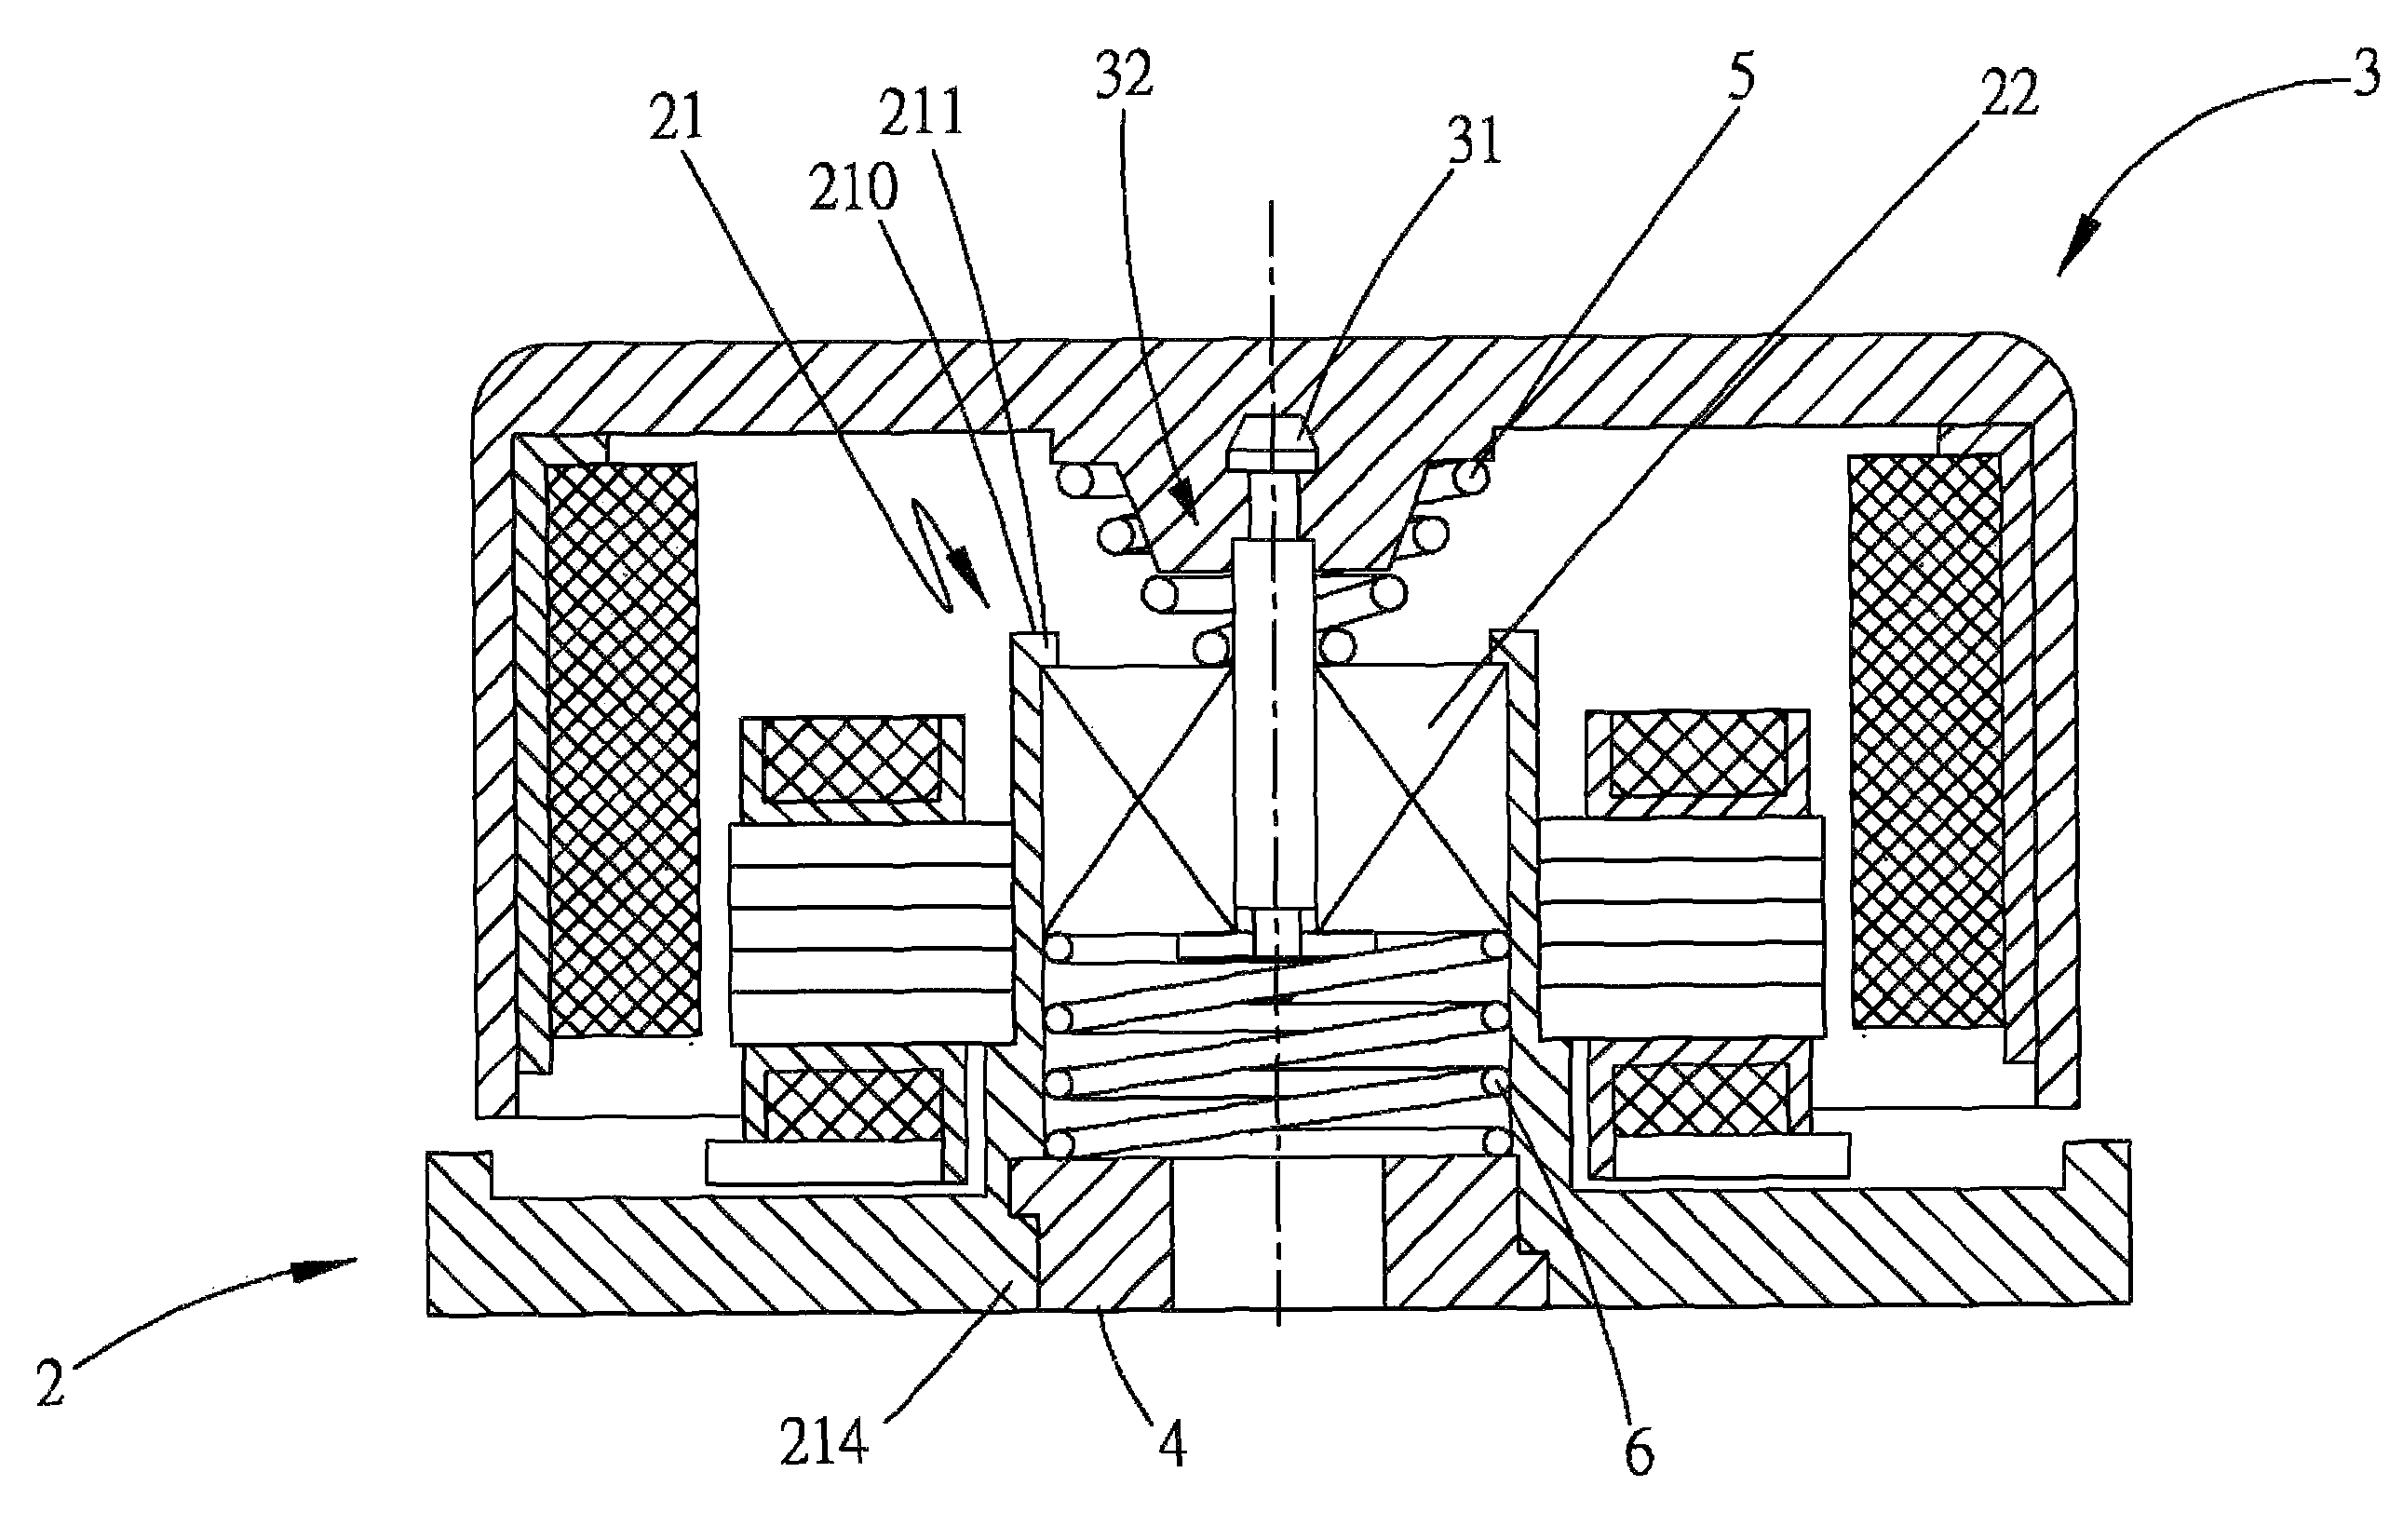 Single-bearing fan structure